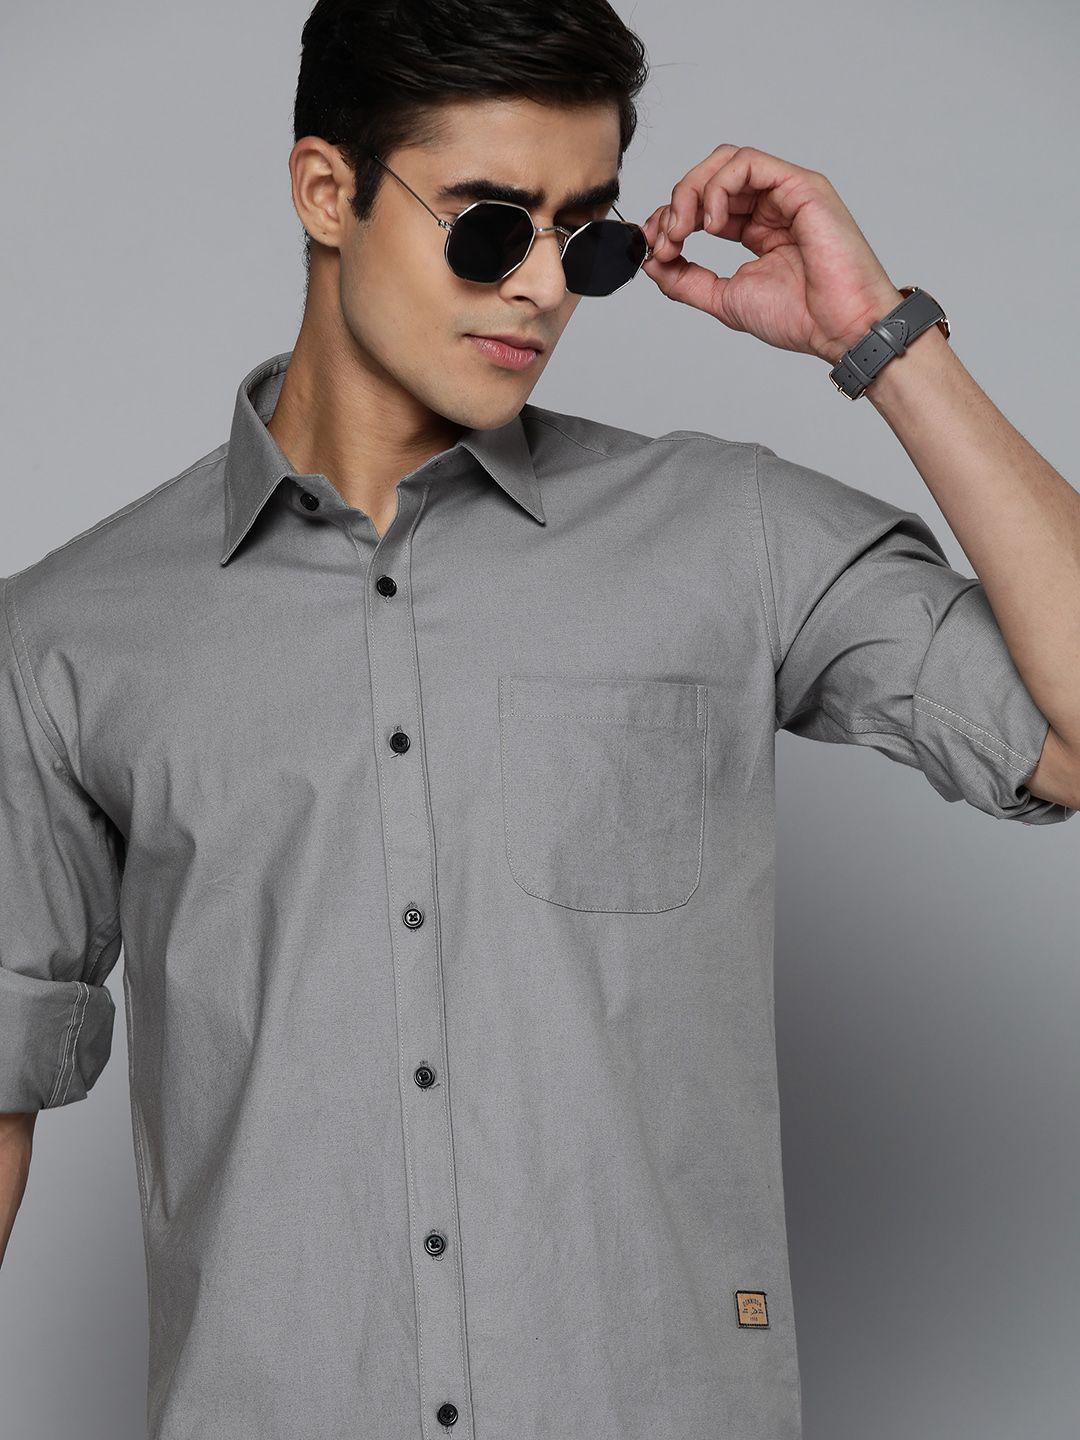 dennison men grey solid pure cotton smart slim fit casual shirt